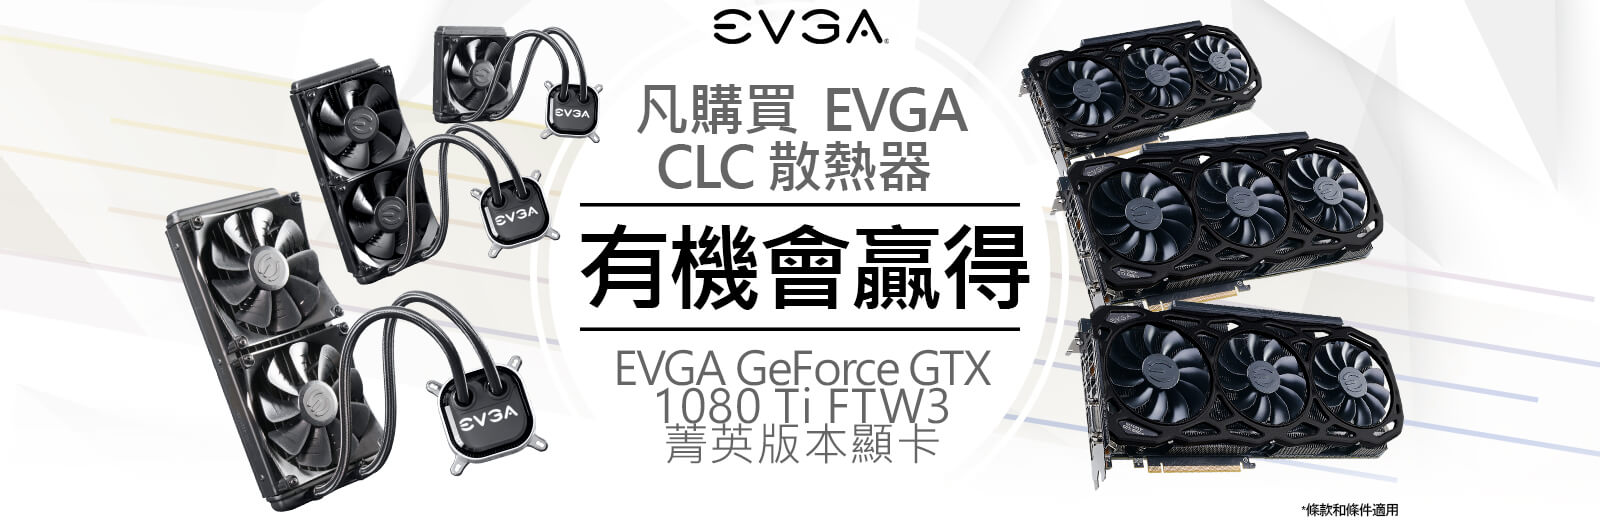 凡購買  EVGA CLC 散熱器 ，有機會贏得 EVGA GeForce GTX 1080 Ti FTW3 菁英版本顯卡